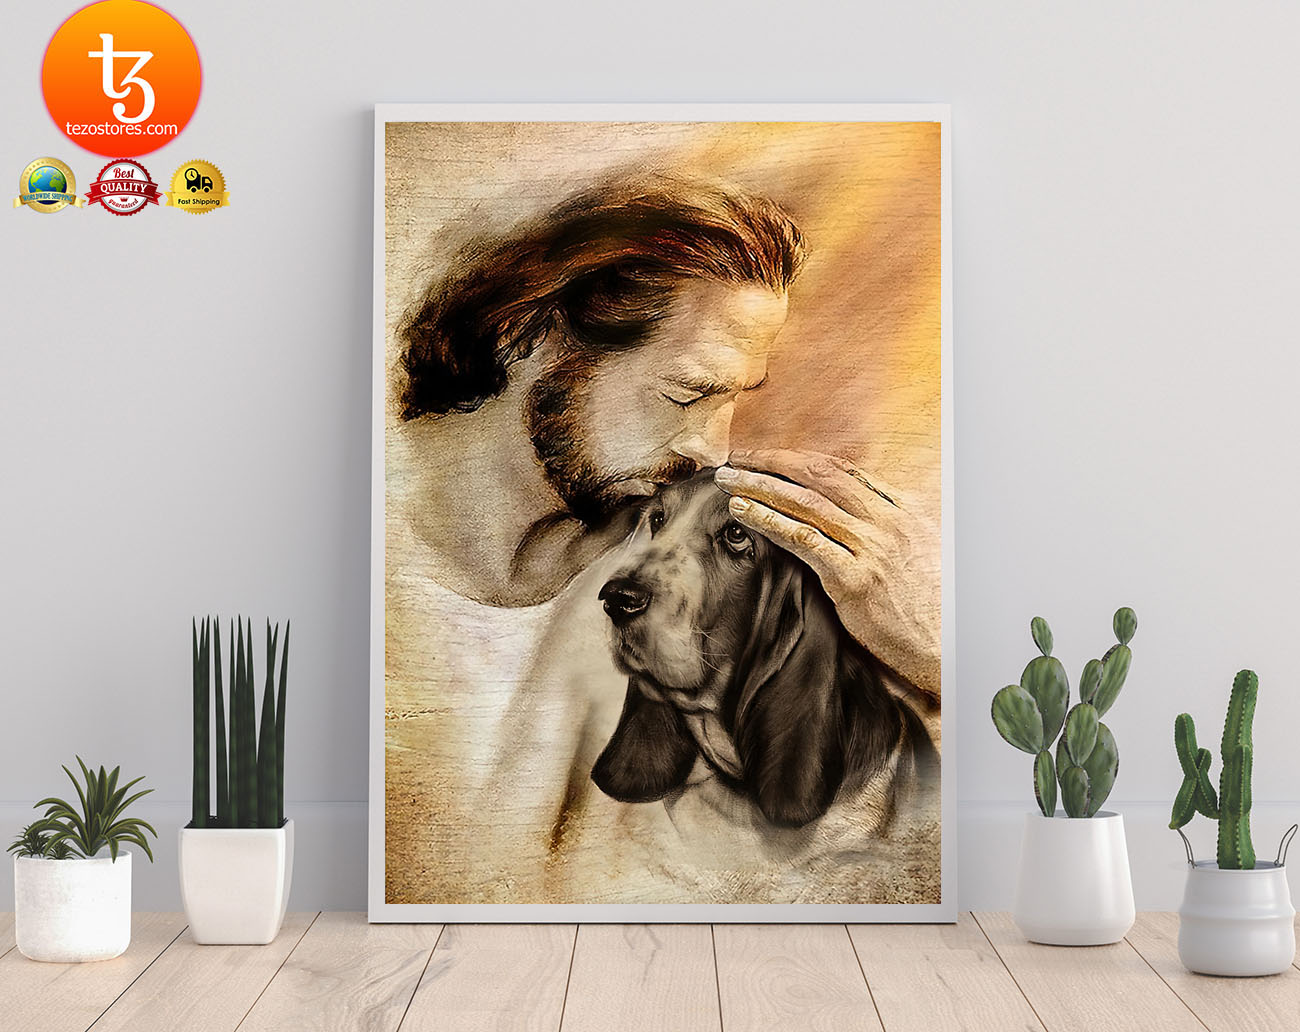 Jesus with Basset hound poster2